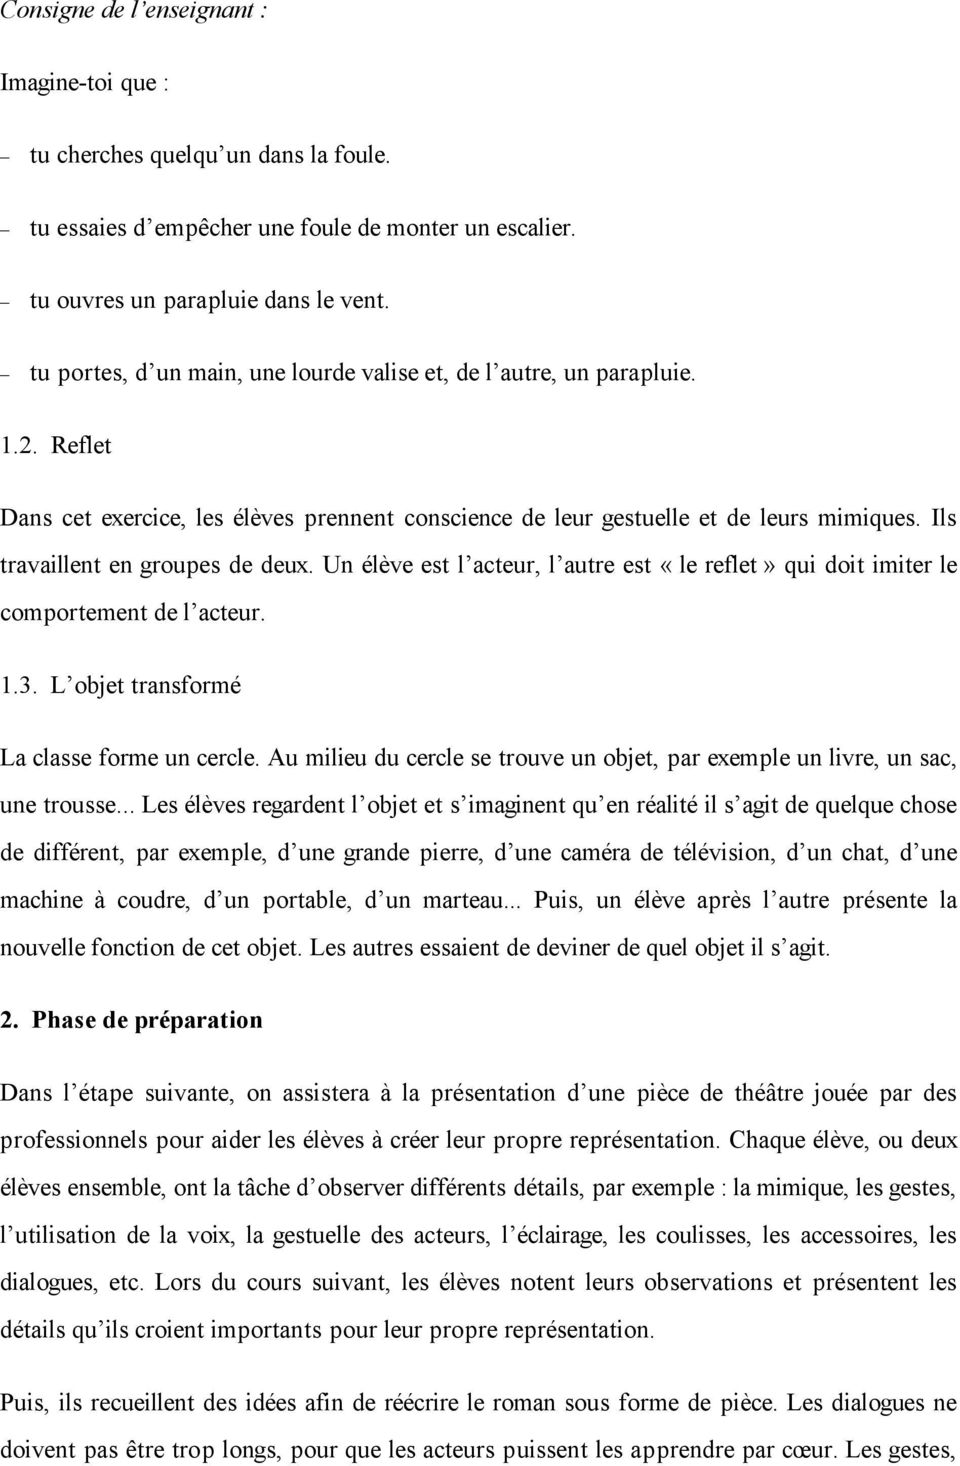 Thierry Lenain : Pas de pitié pour les poupées B. - PDF Free Download